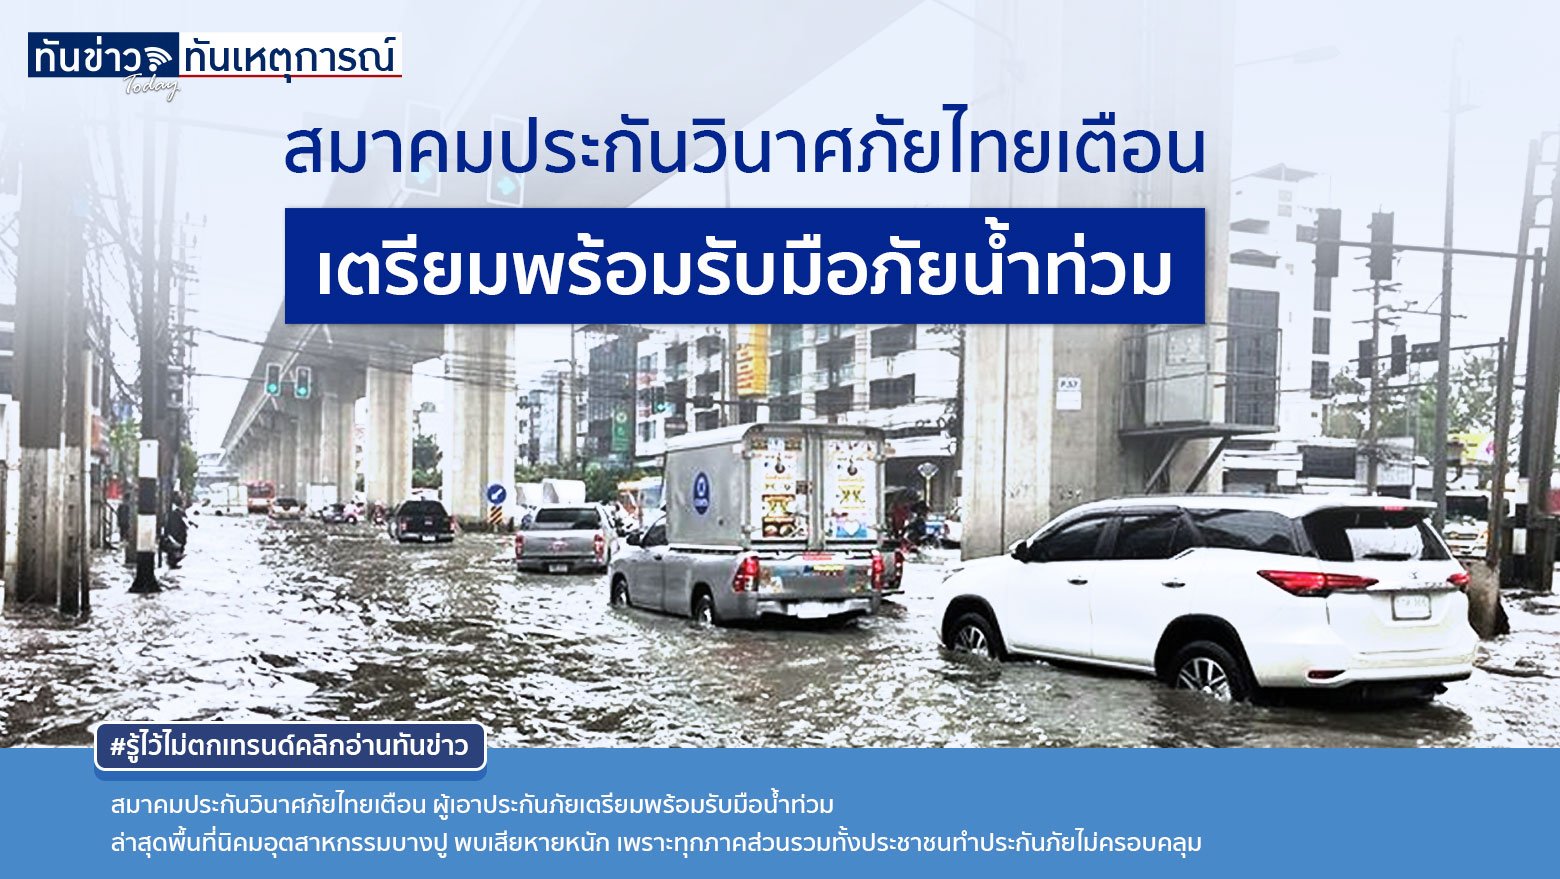 สมาคมประกันวินาศภัยไทยเตือนผู้เอาประกันภัยเตรียมพร้อมรับมือน้ำท่วมและติดตามสถานการณ์อย่างใกล้ชิด ภัยธรรมชาติมาบ่อยขึ้น